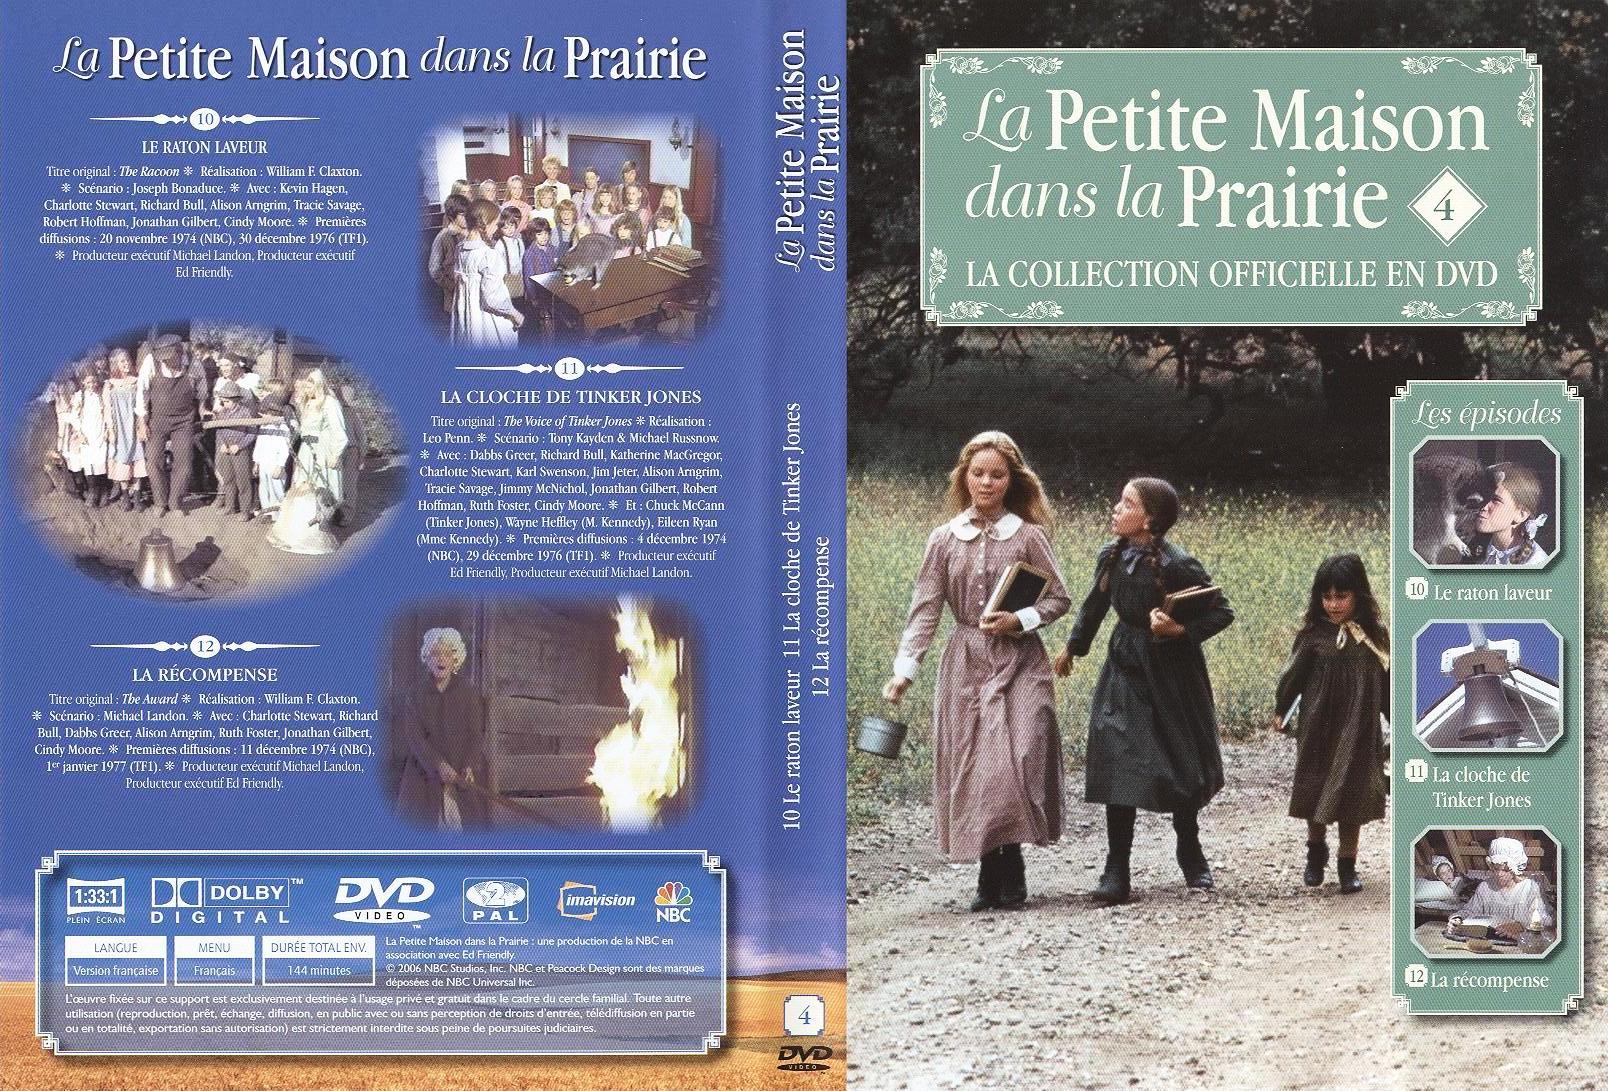 Jaquette DVD La petite maison dans la prairie La Collection vol 04